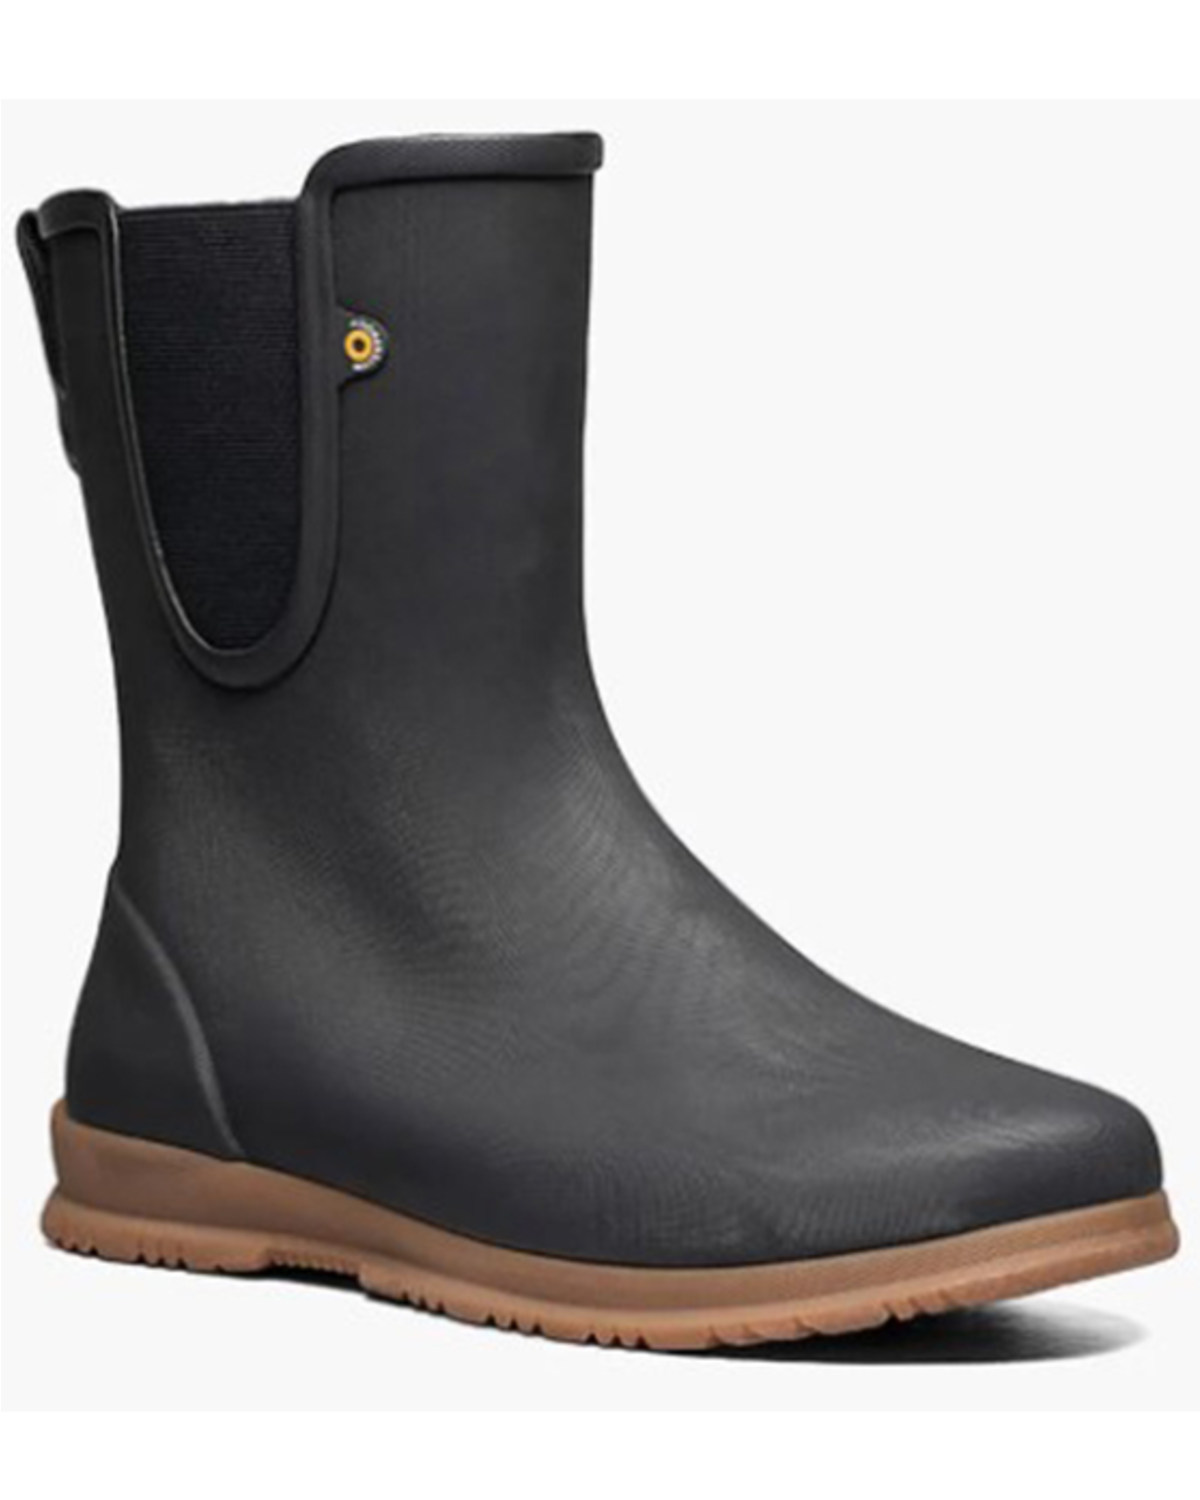 Bogs Women's Sweetpea Tall Rain Boots - Soft Toe